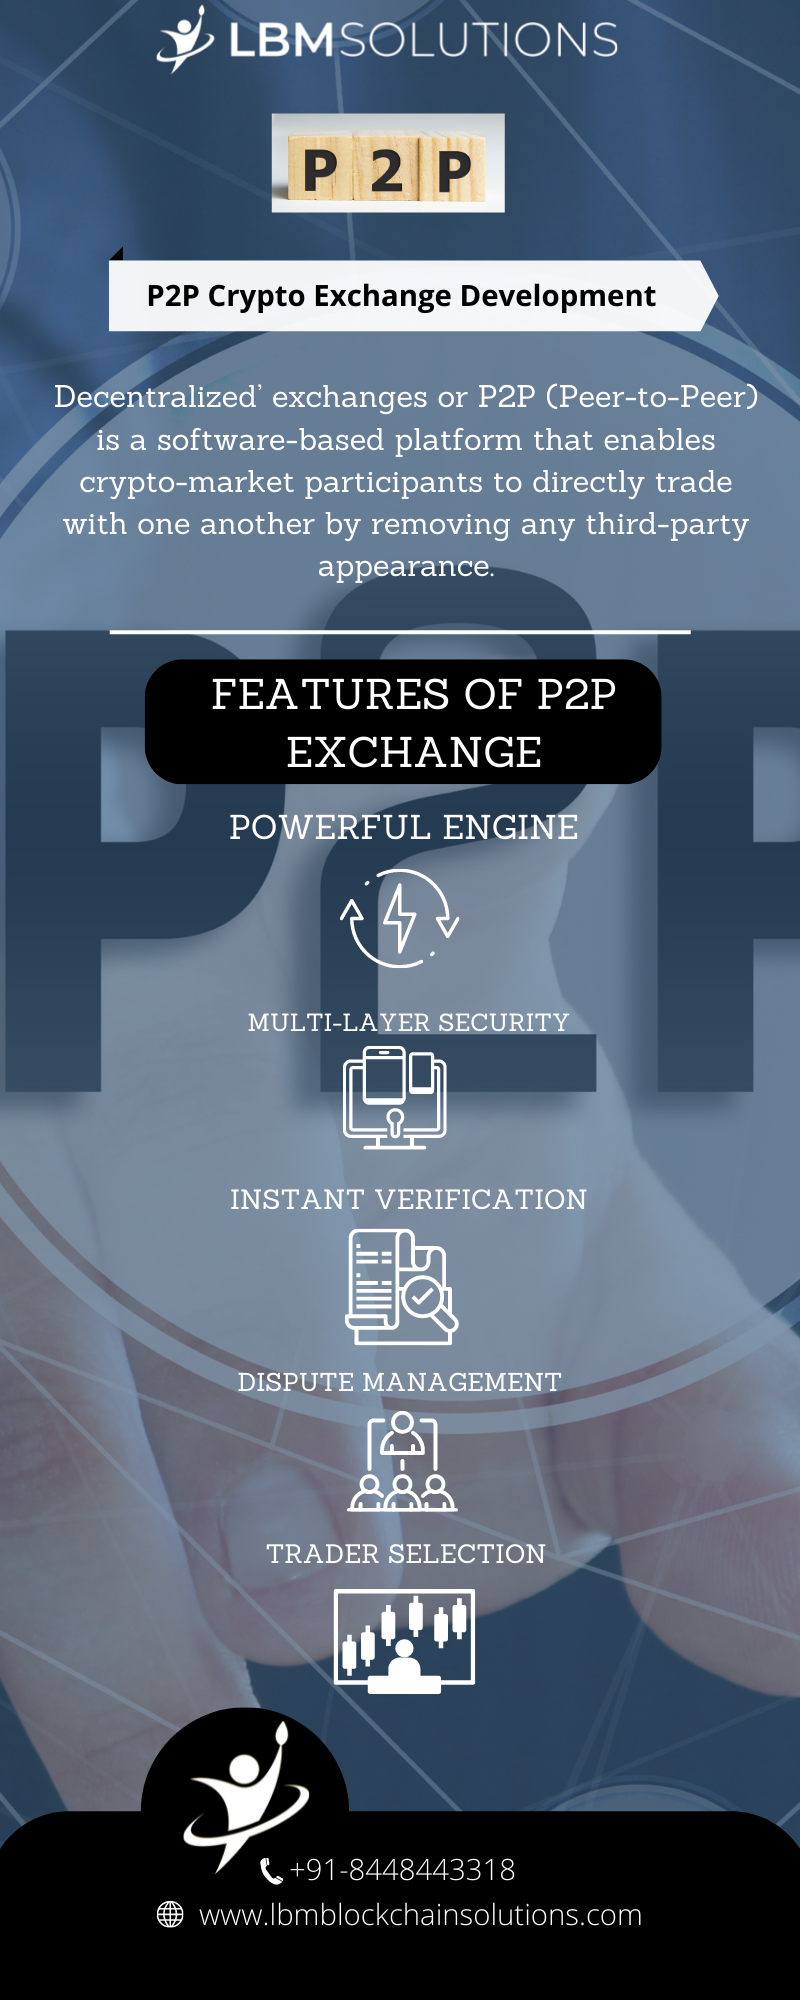 FEATURES OF P2P
EXCHANGE

7 CC +91-8448443318
@&amp; www lbmbloc solutions.com